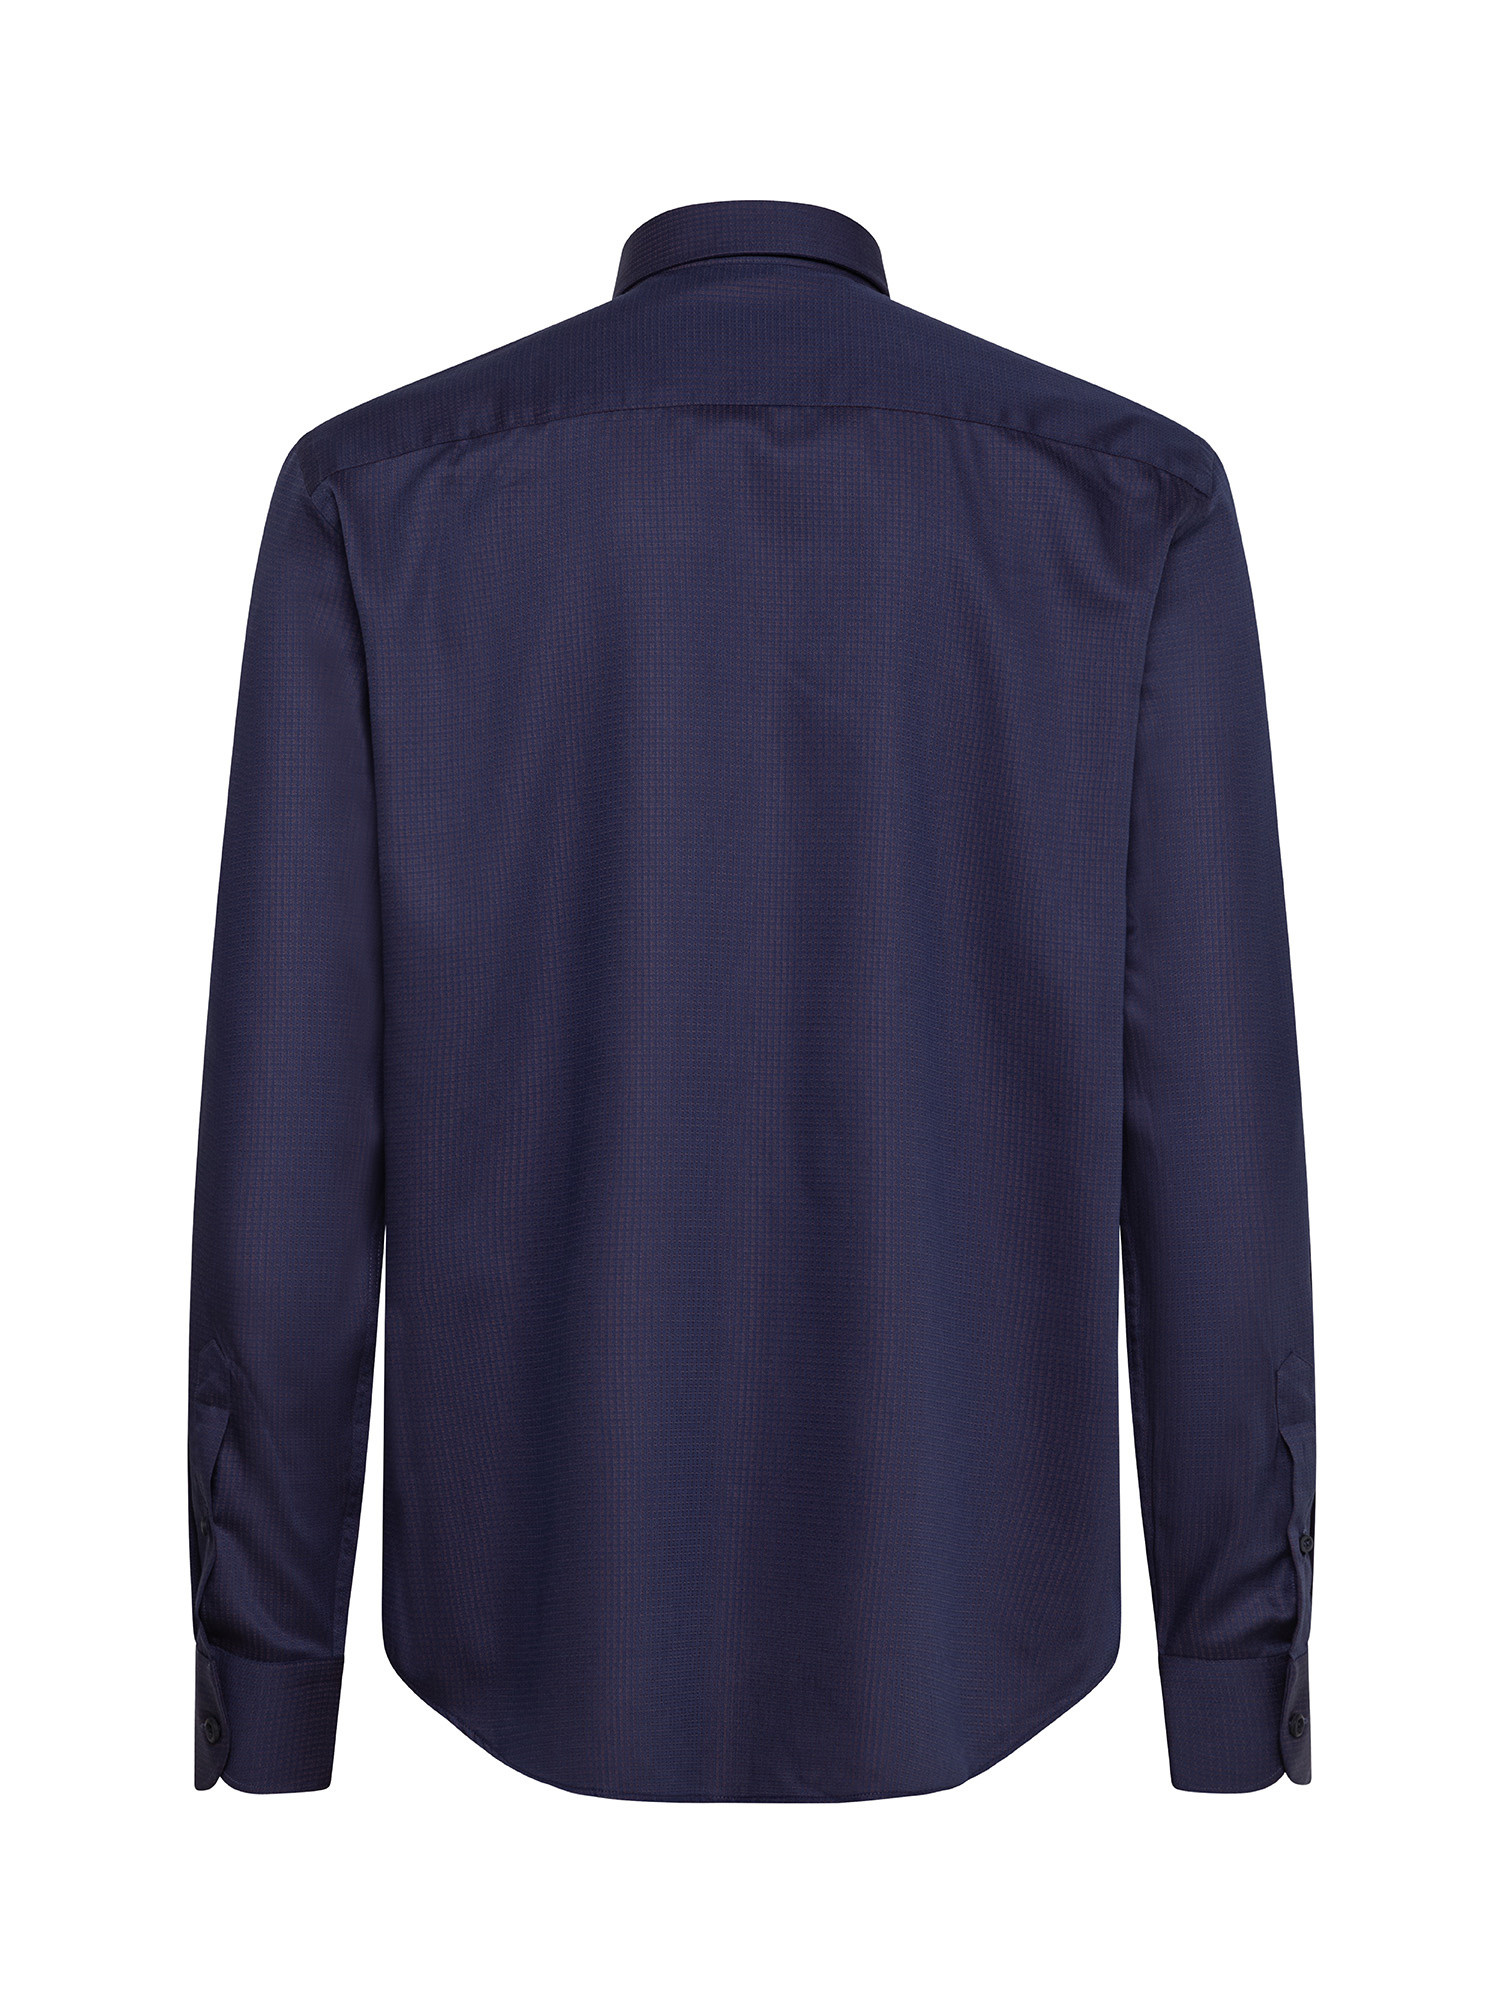 Luca D'Altieri - Camicia tailor fit in puro cotone, Blu 2, large image number 2